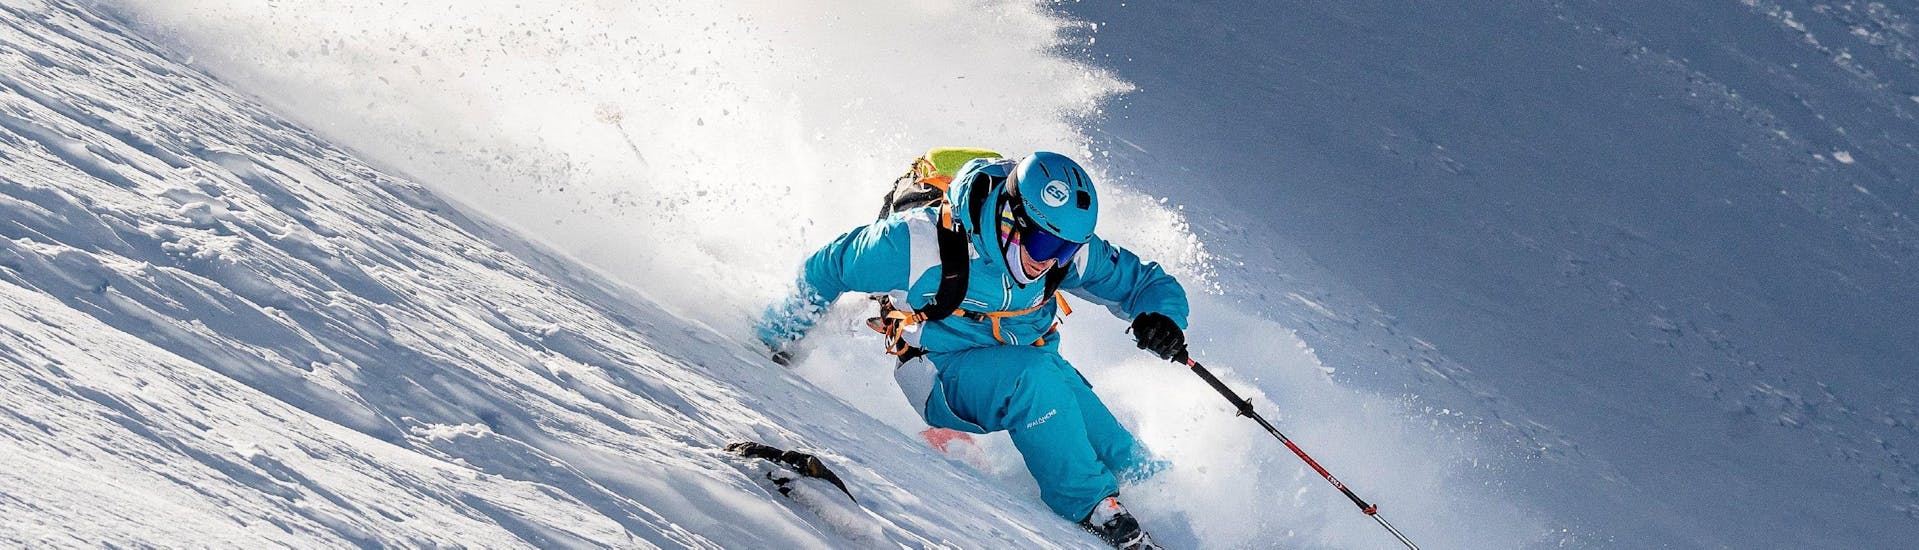 Un monitor de esquí de la escuela de esquí ESI Alpe d'Huez - Escuela europea de esquí, está bajando la pista para marcar el camino durante las clases particulares de esquí para adultos de todos los niveles - Temporada baja.